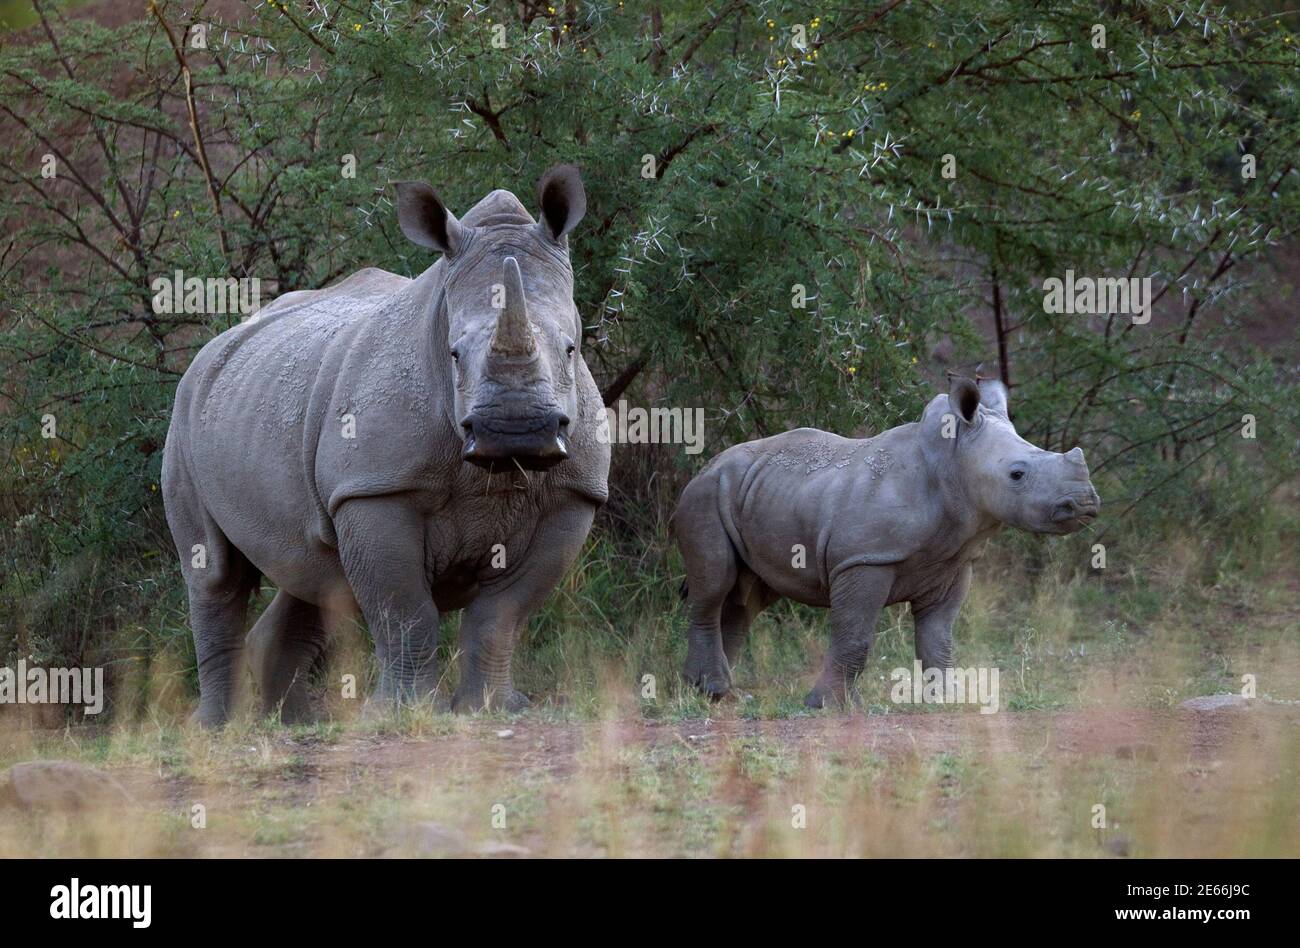 rhinoceros weight